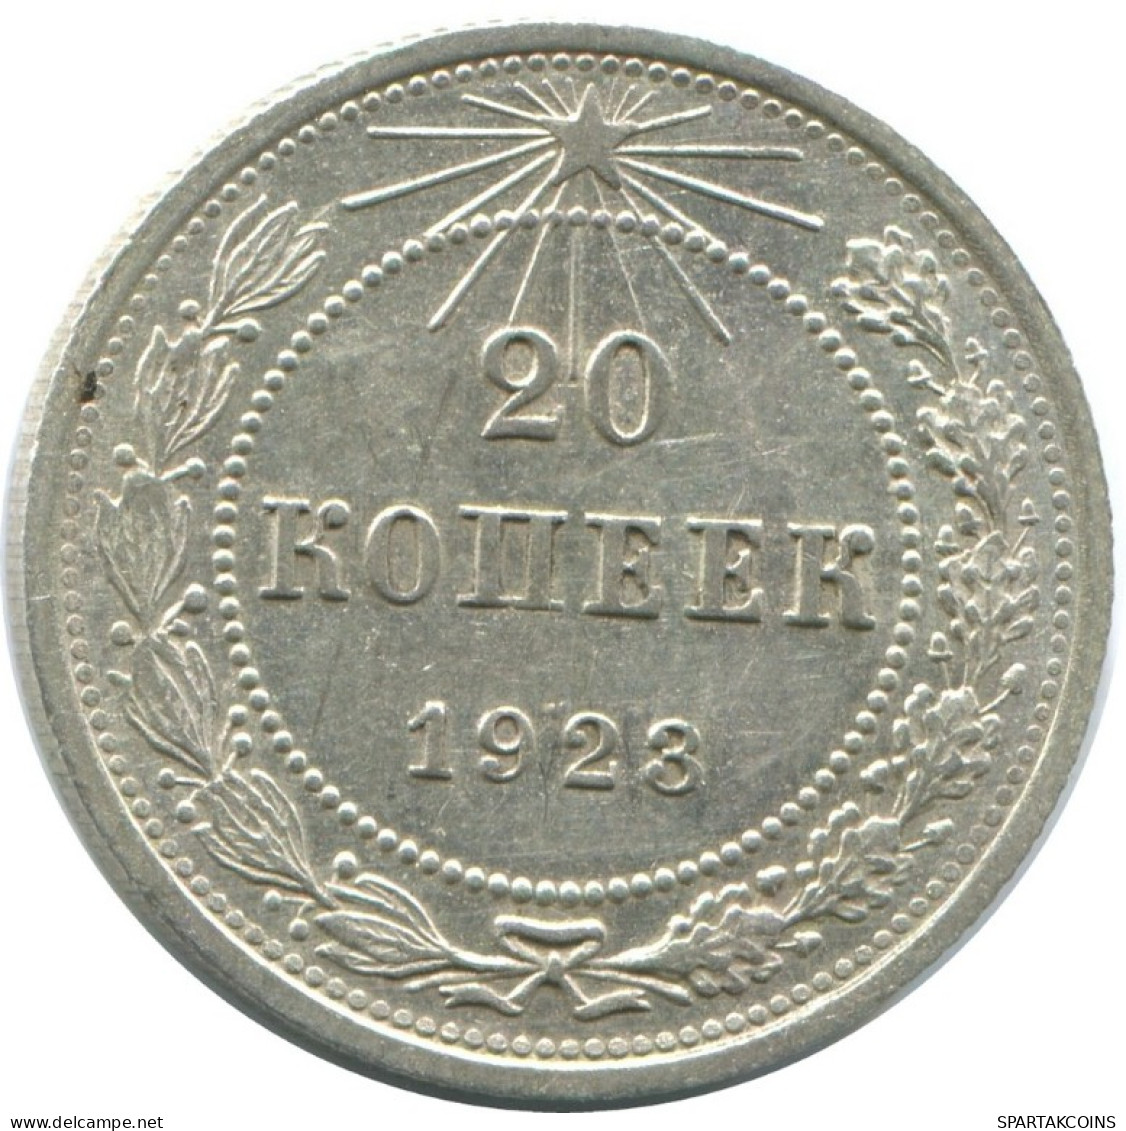 20 KOPEKS 1923 RUSSLAND RUSSIA RSFSR SILBER Münze HIGH GRADE #AF646.D.A - Rusia